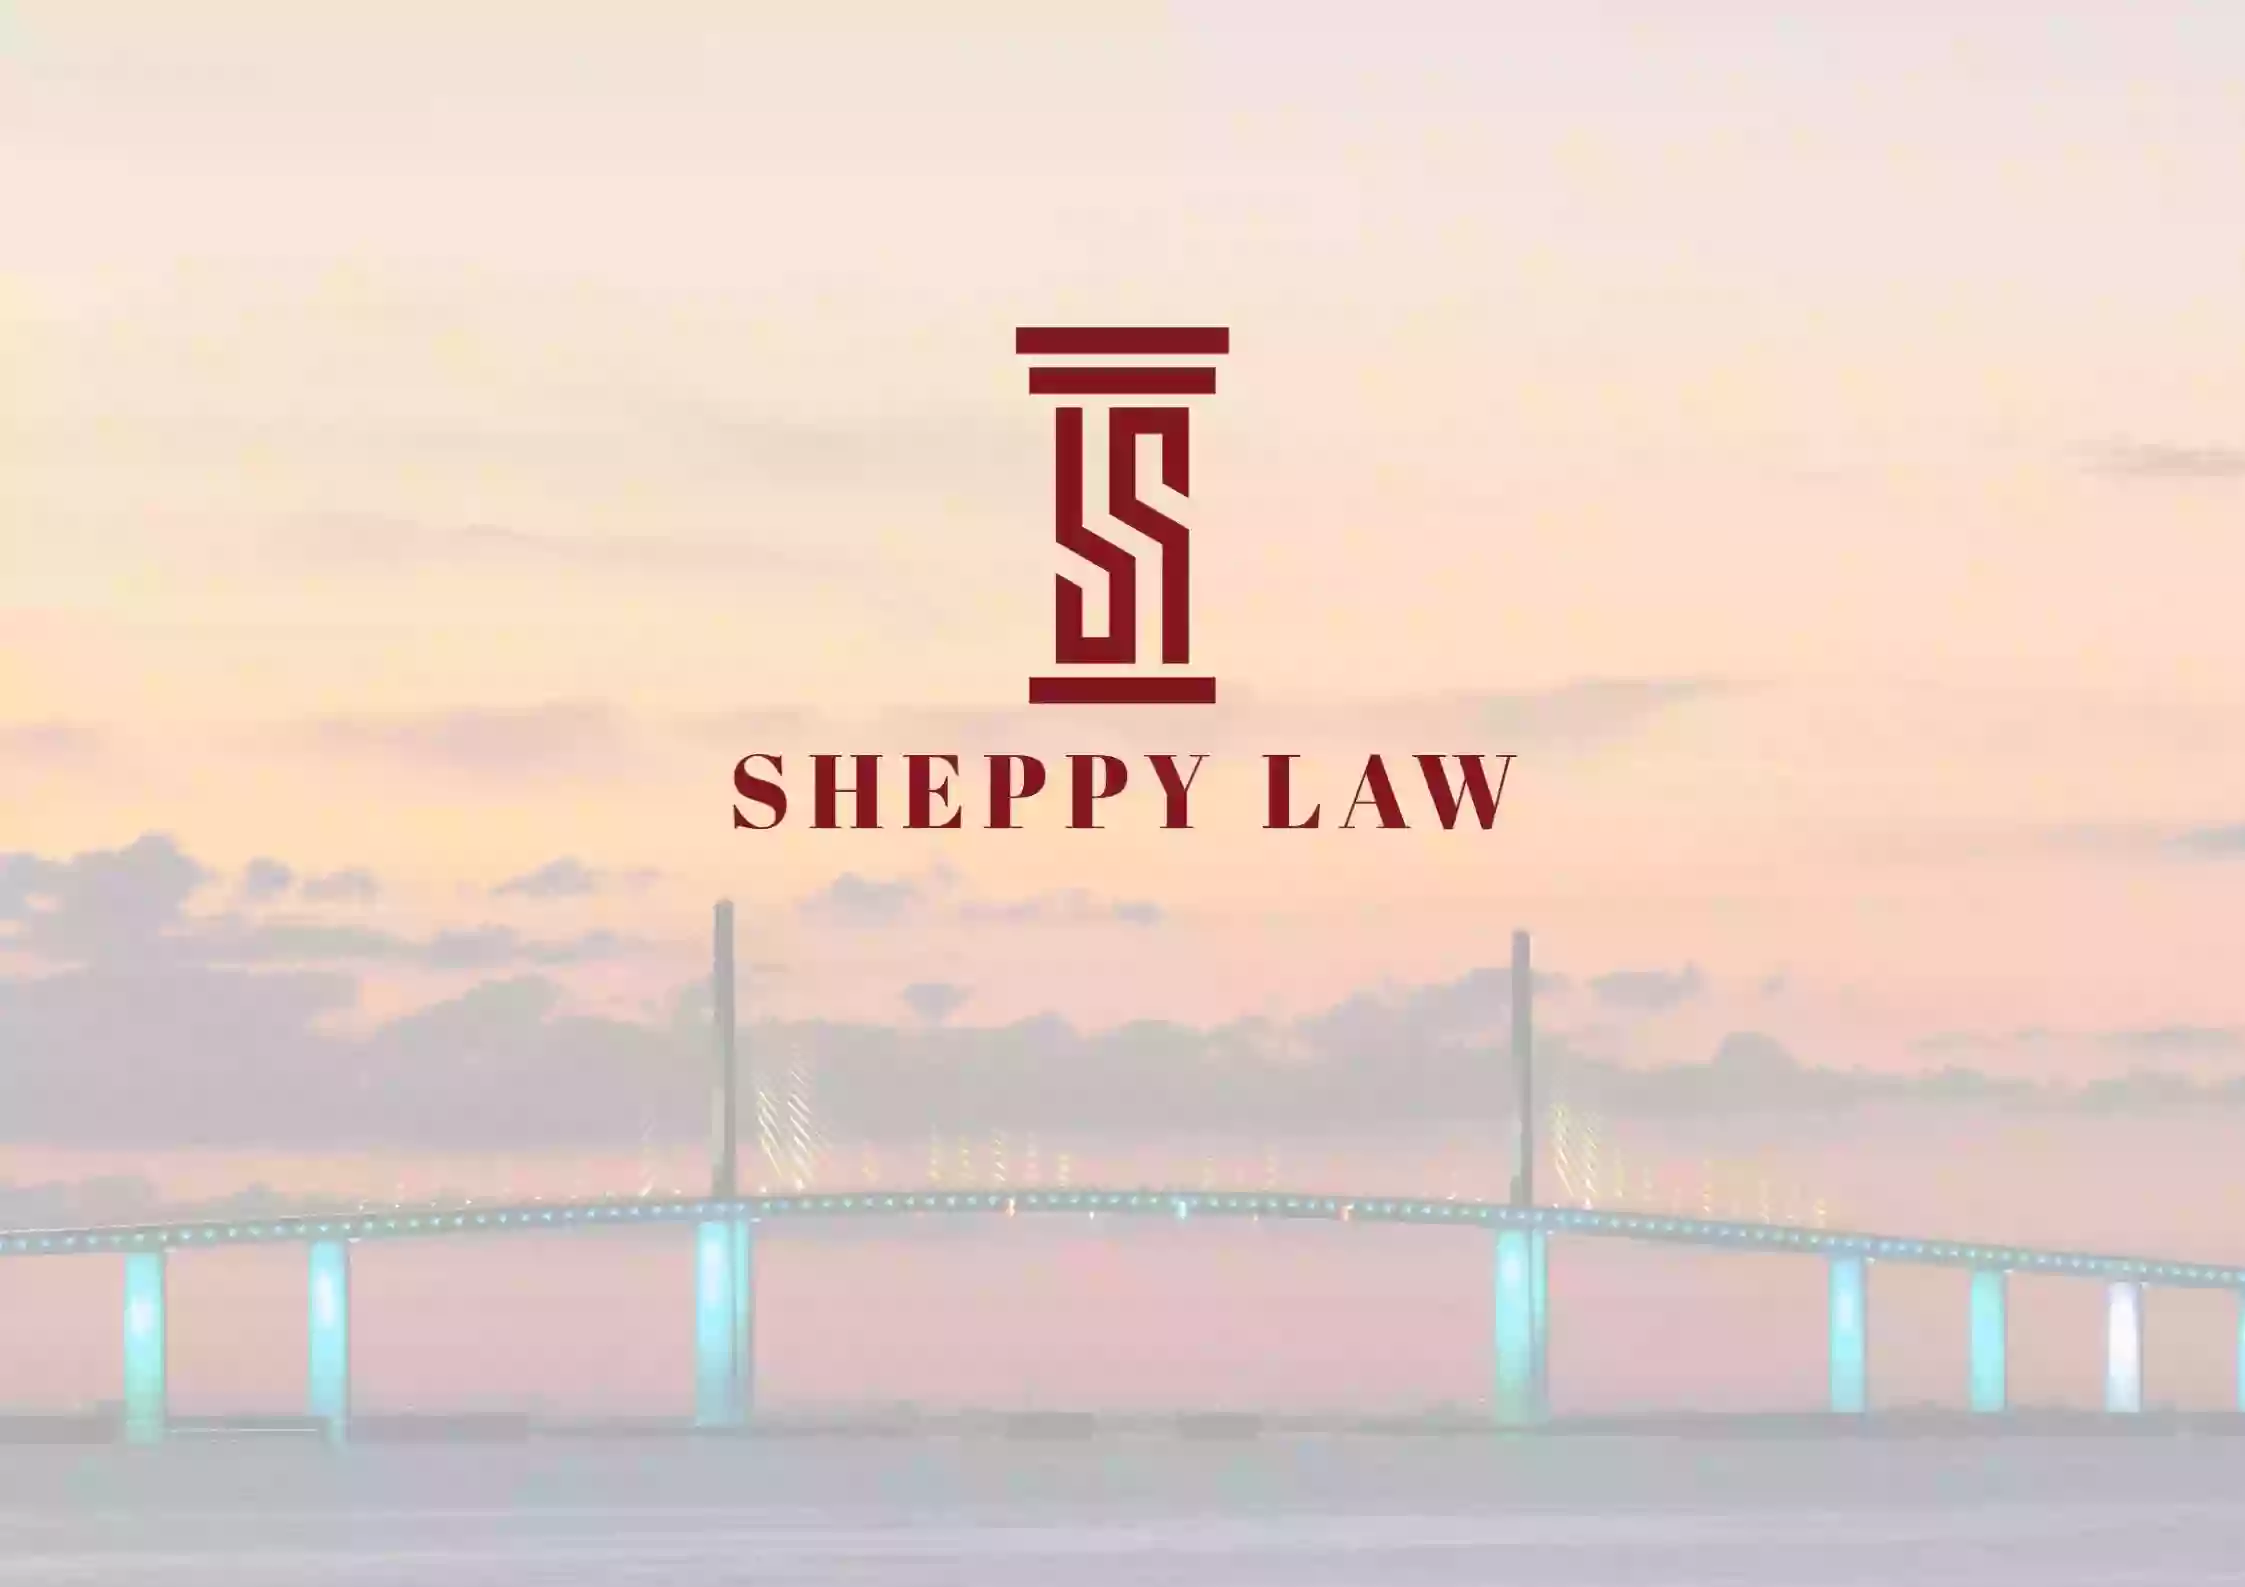 SHEPPY LAW